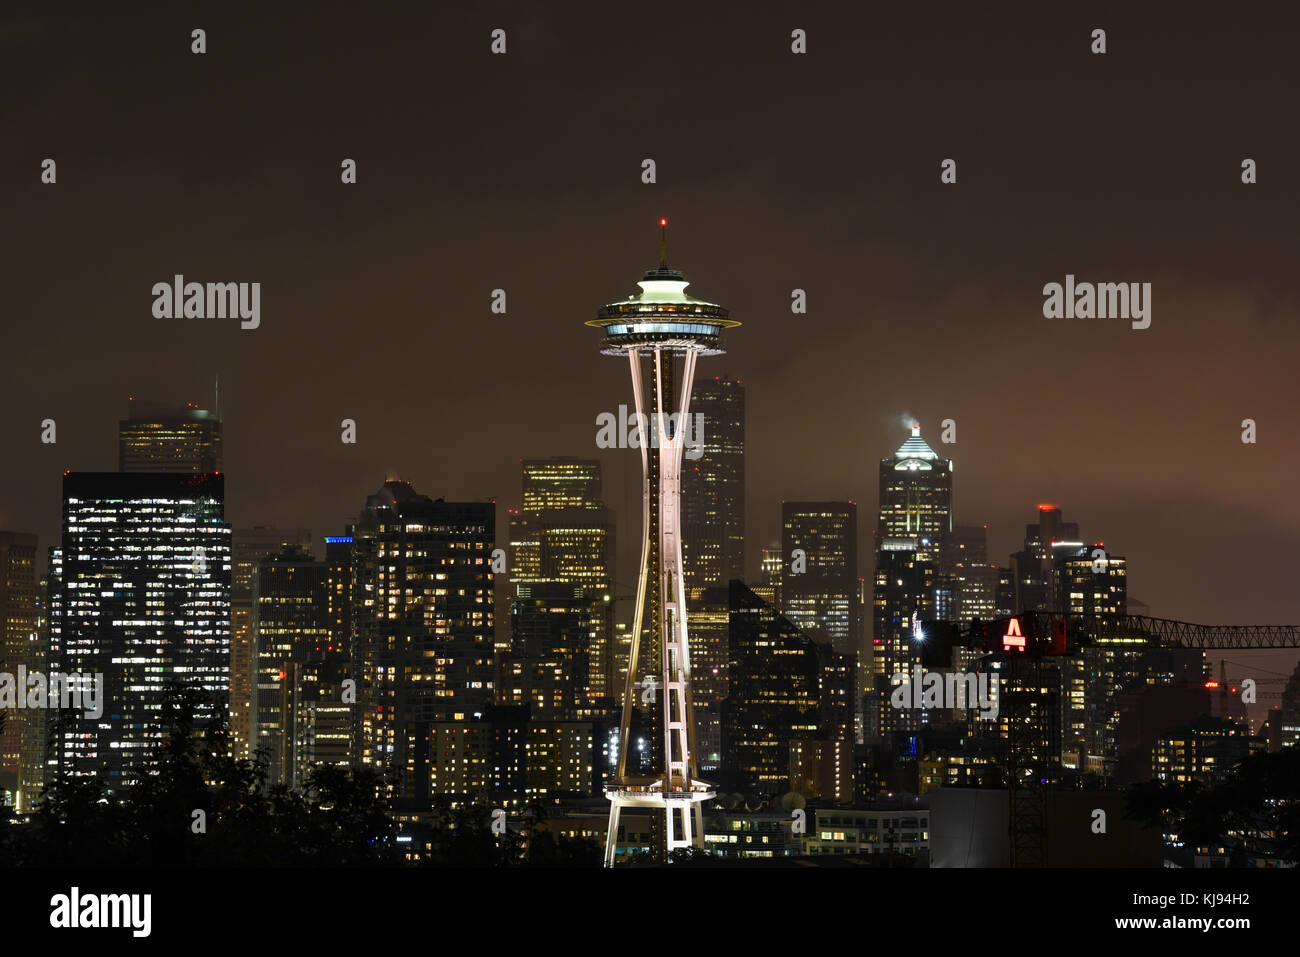 Abenddämmerung Stadtbild von Seattle Space Needle Skyline bei Nacht mit Beleuchtung Stockfoto